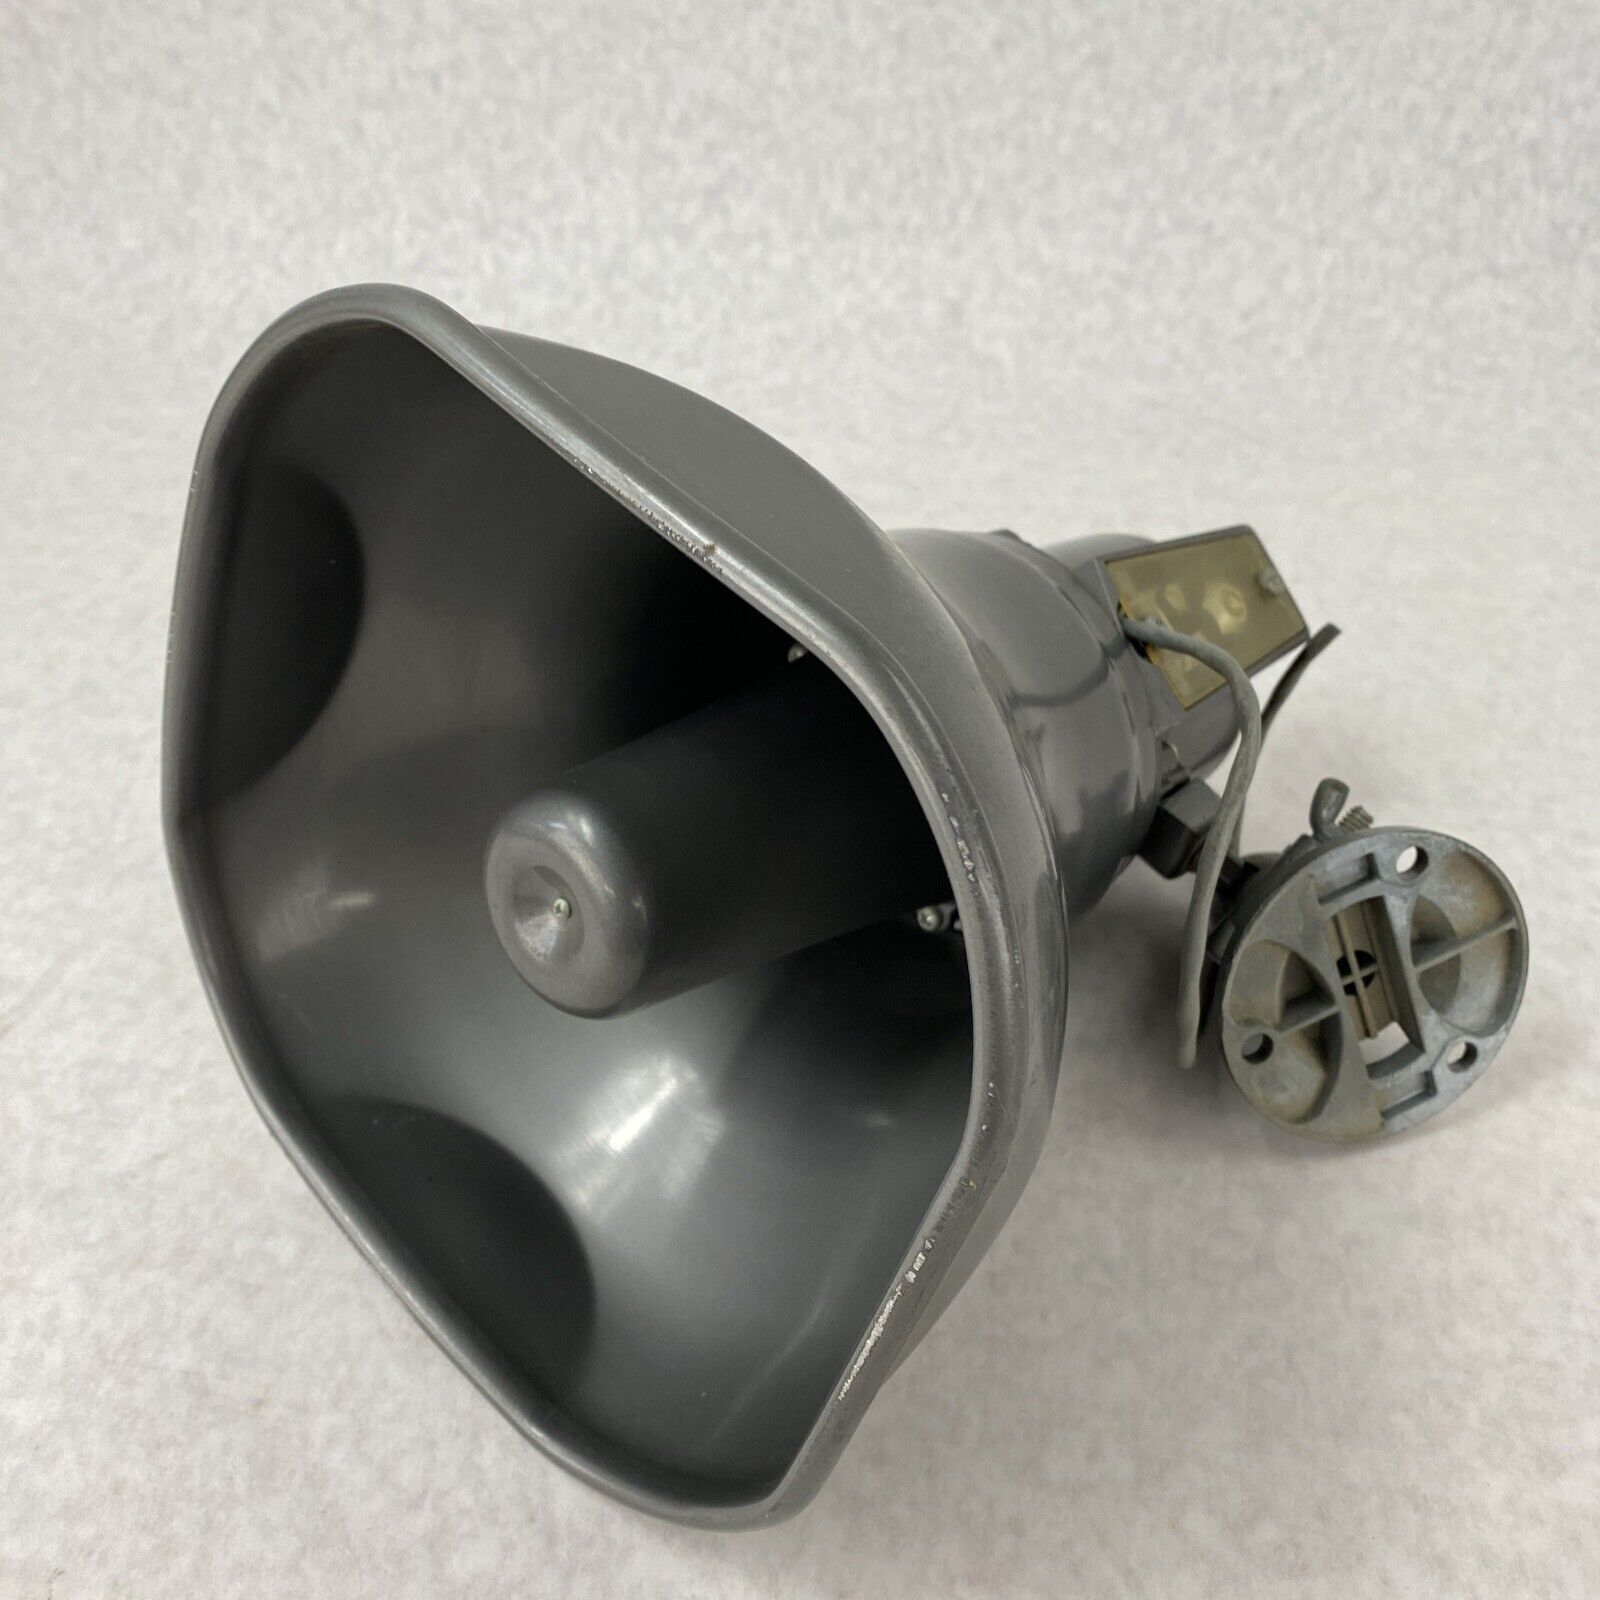 Dukane 5A30 15 Watt Horn Speaker Made In USA